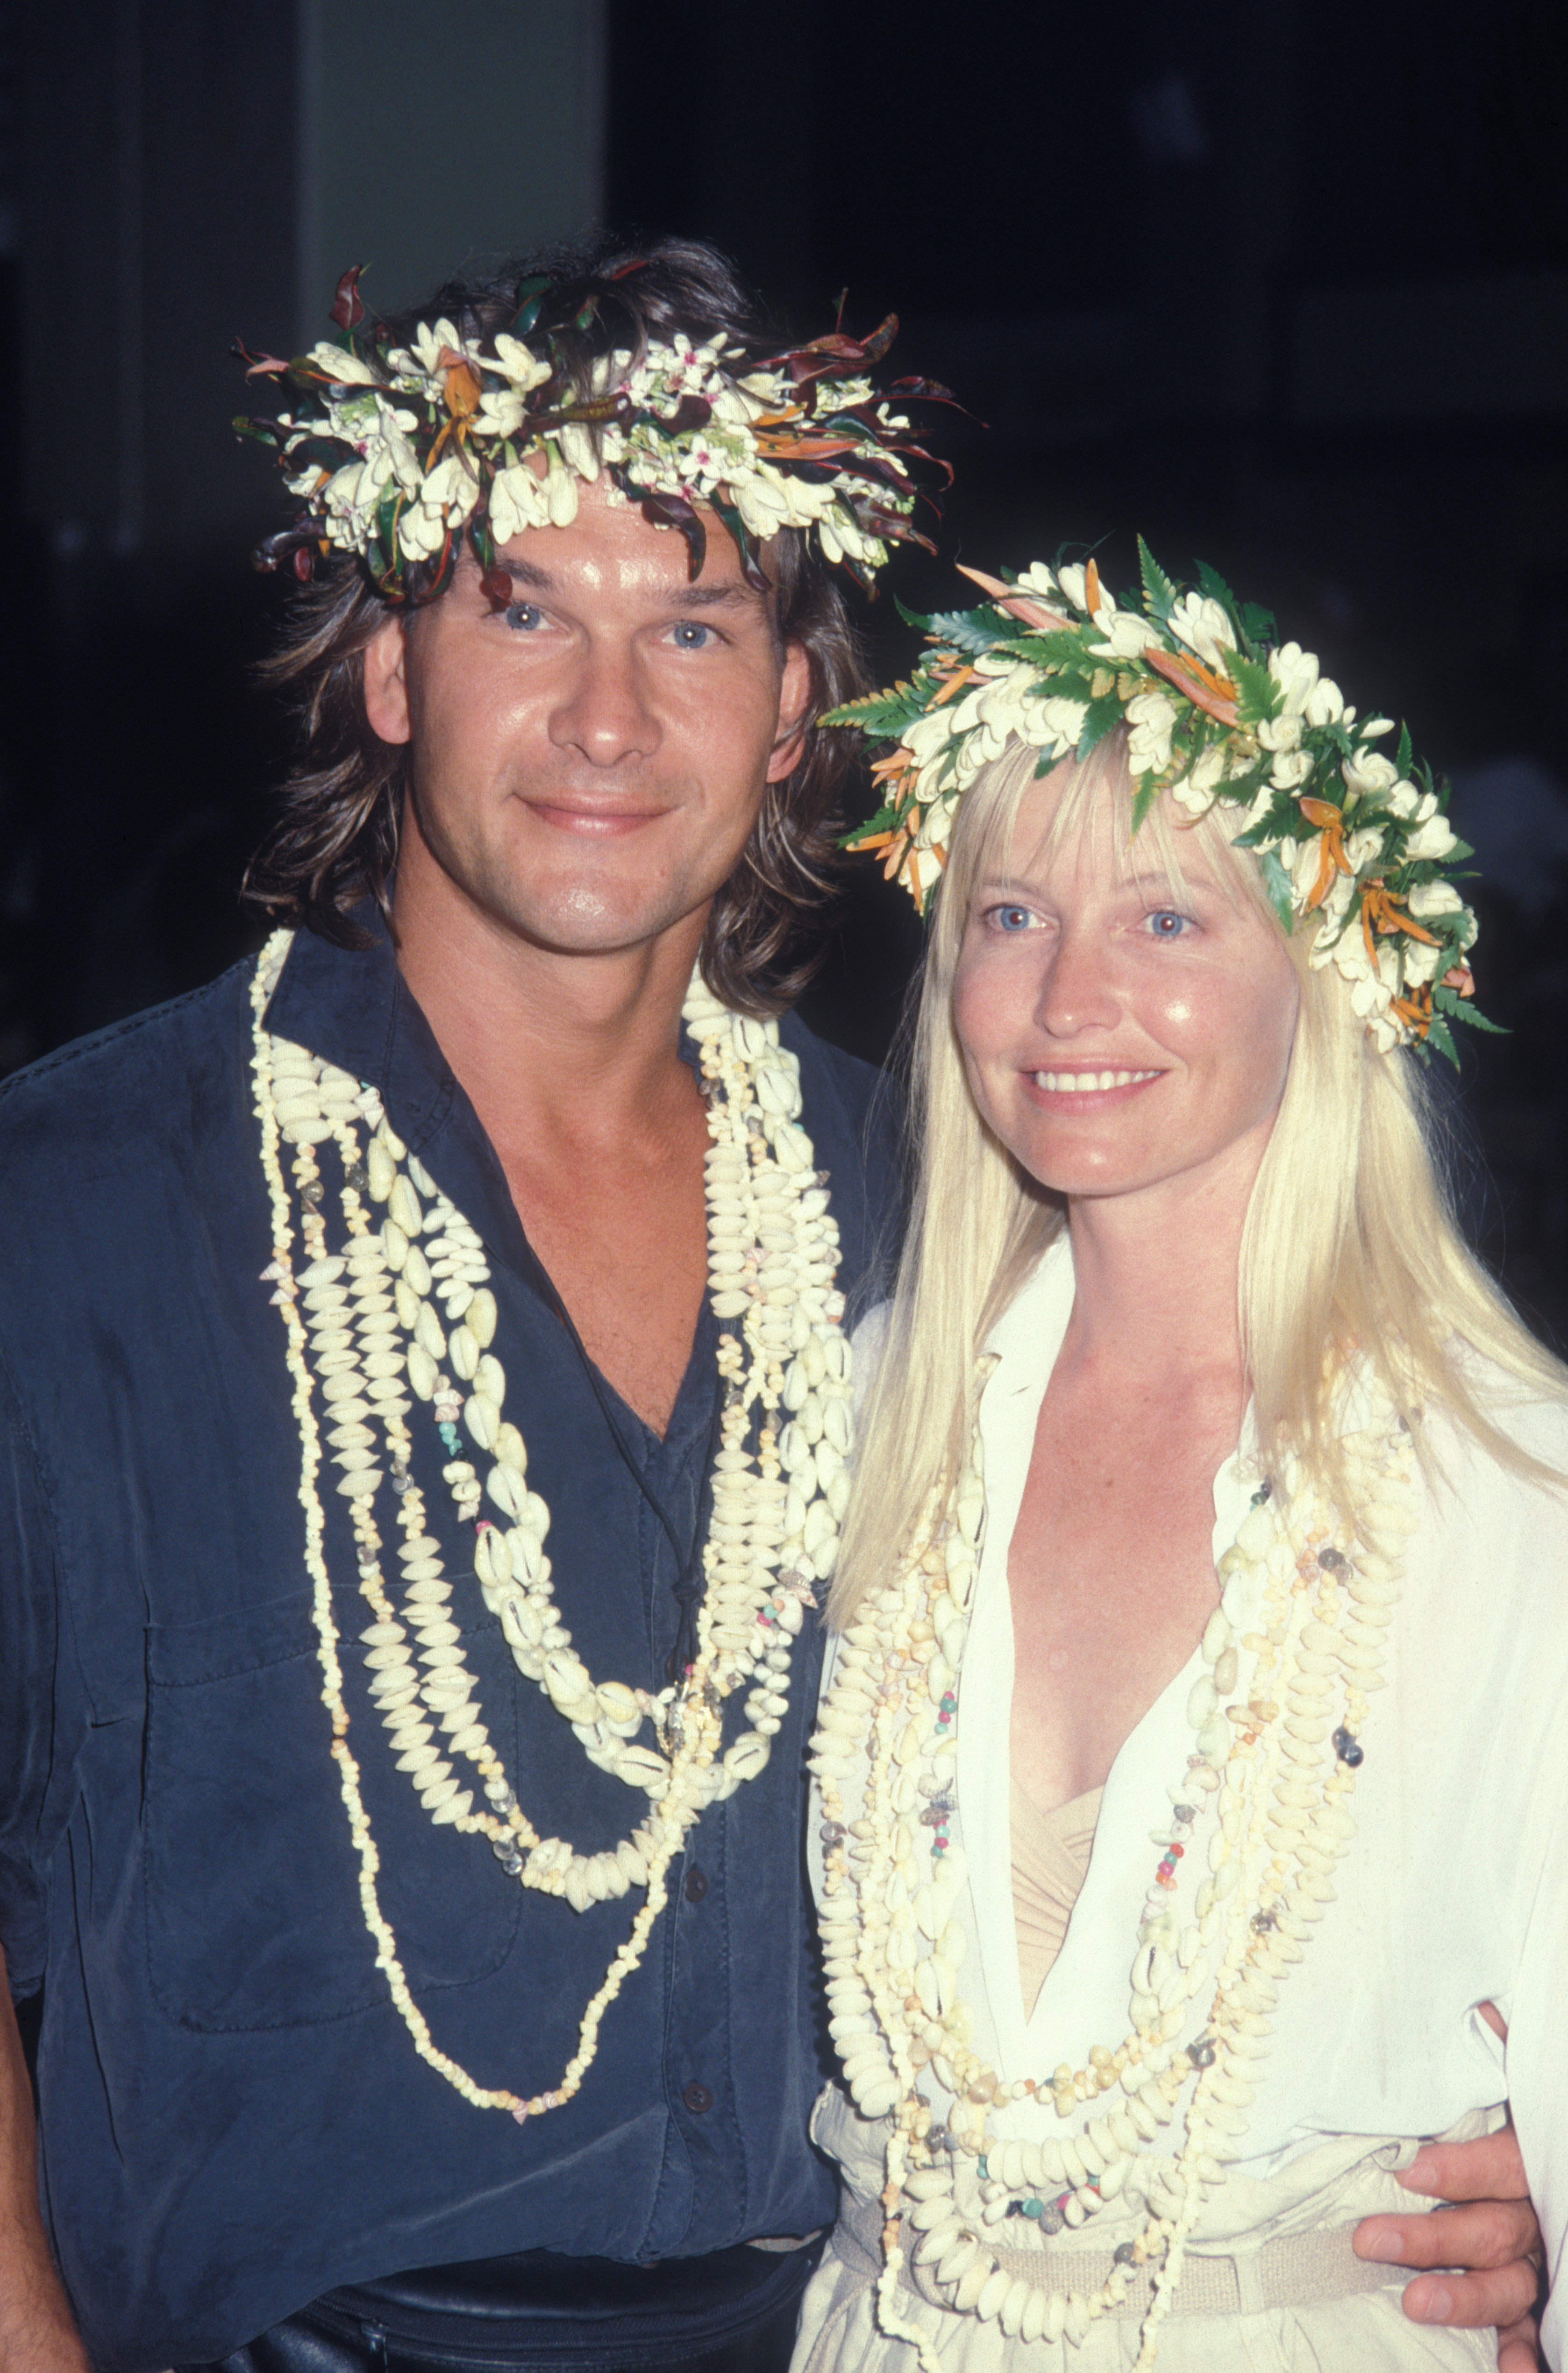 Patrick Swayze et sa femme Lisa Niemi photographiés en 1989 | Source : Getty Images